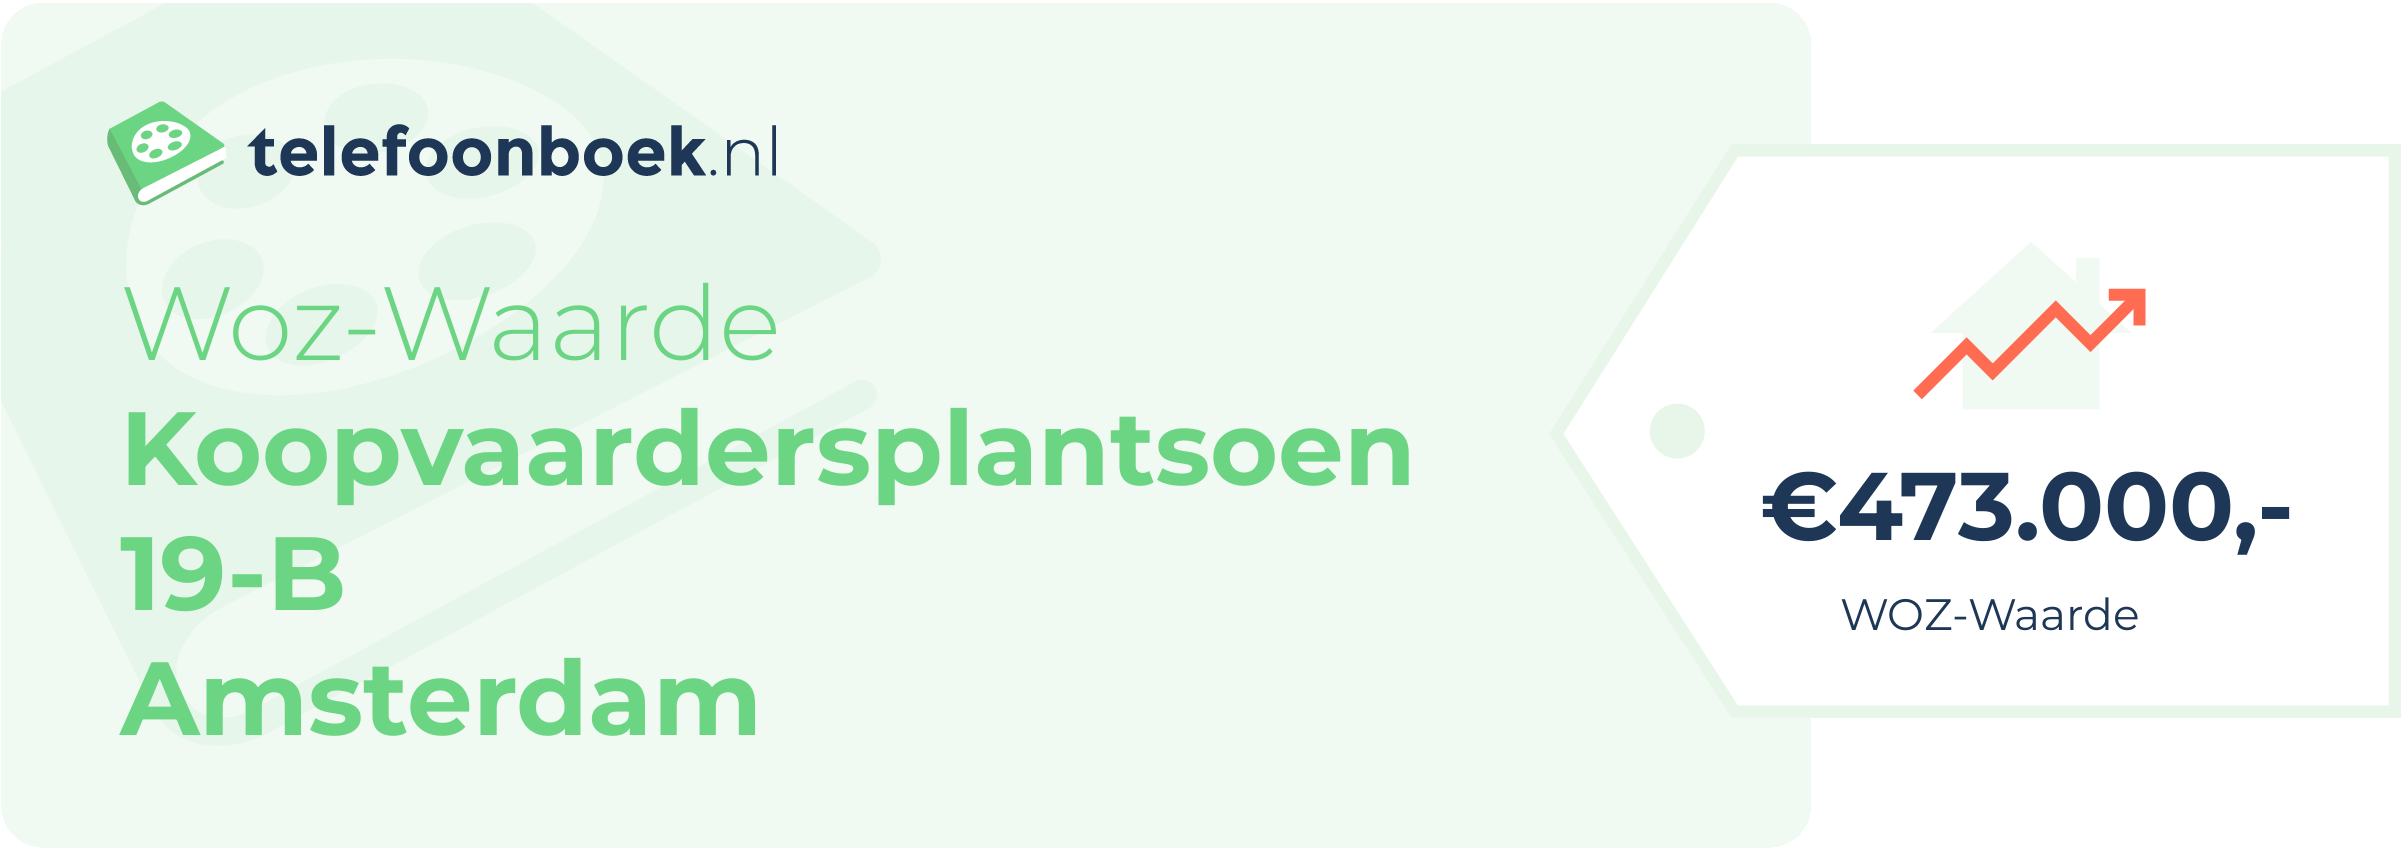 WOZ-waarde Koopvaardersplantsoen 19-B Amsterdam